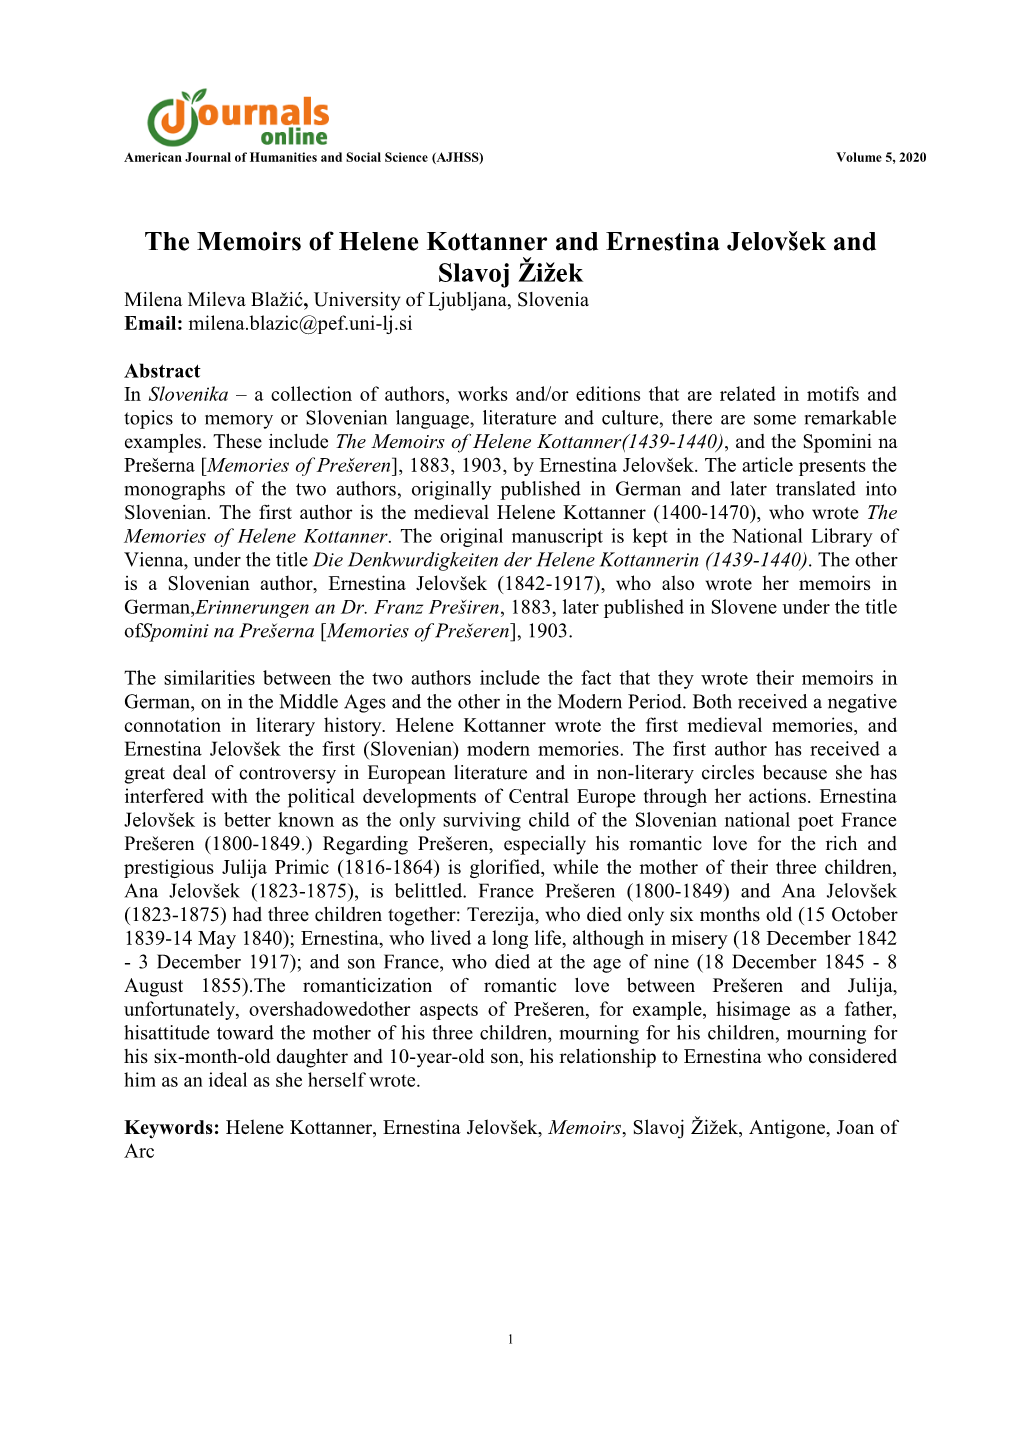 The Memoirs of Helene Kottanner and Ernestina Jelovšek and Slavoj Žižek Milena Mileva Blaţić, University of Ljubljana, Slovenia Email: Milena.Blazic@Pef.Uni-Lj.Si